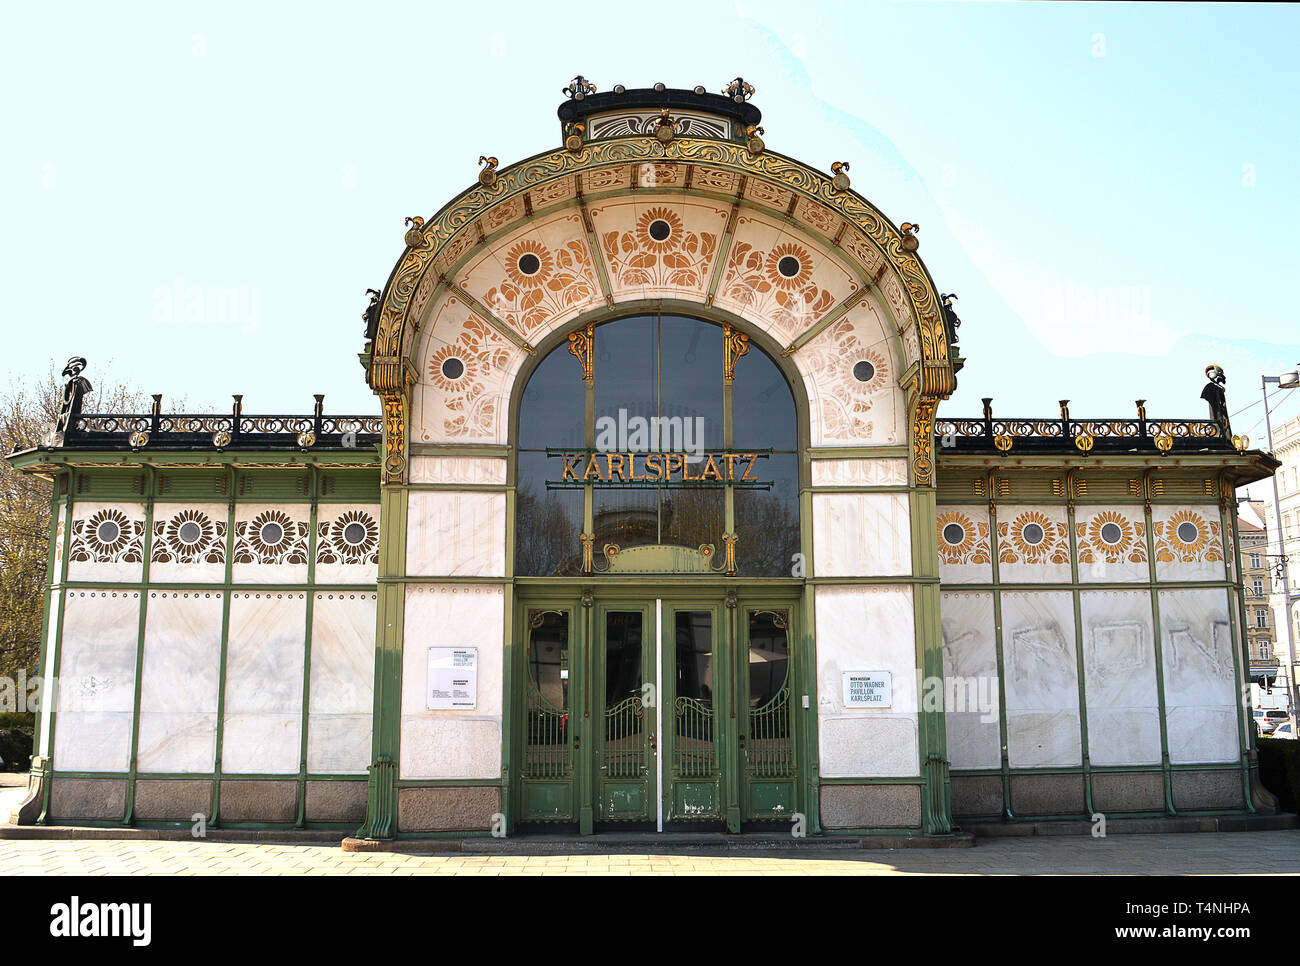 Wien, Österreich - 1 April 2019: Einer von Otto Wagners Art nouveau Pavillons, Teil der Wiener Sezession Manifest, das als Stadtbahn st serviert. Stockfoto